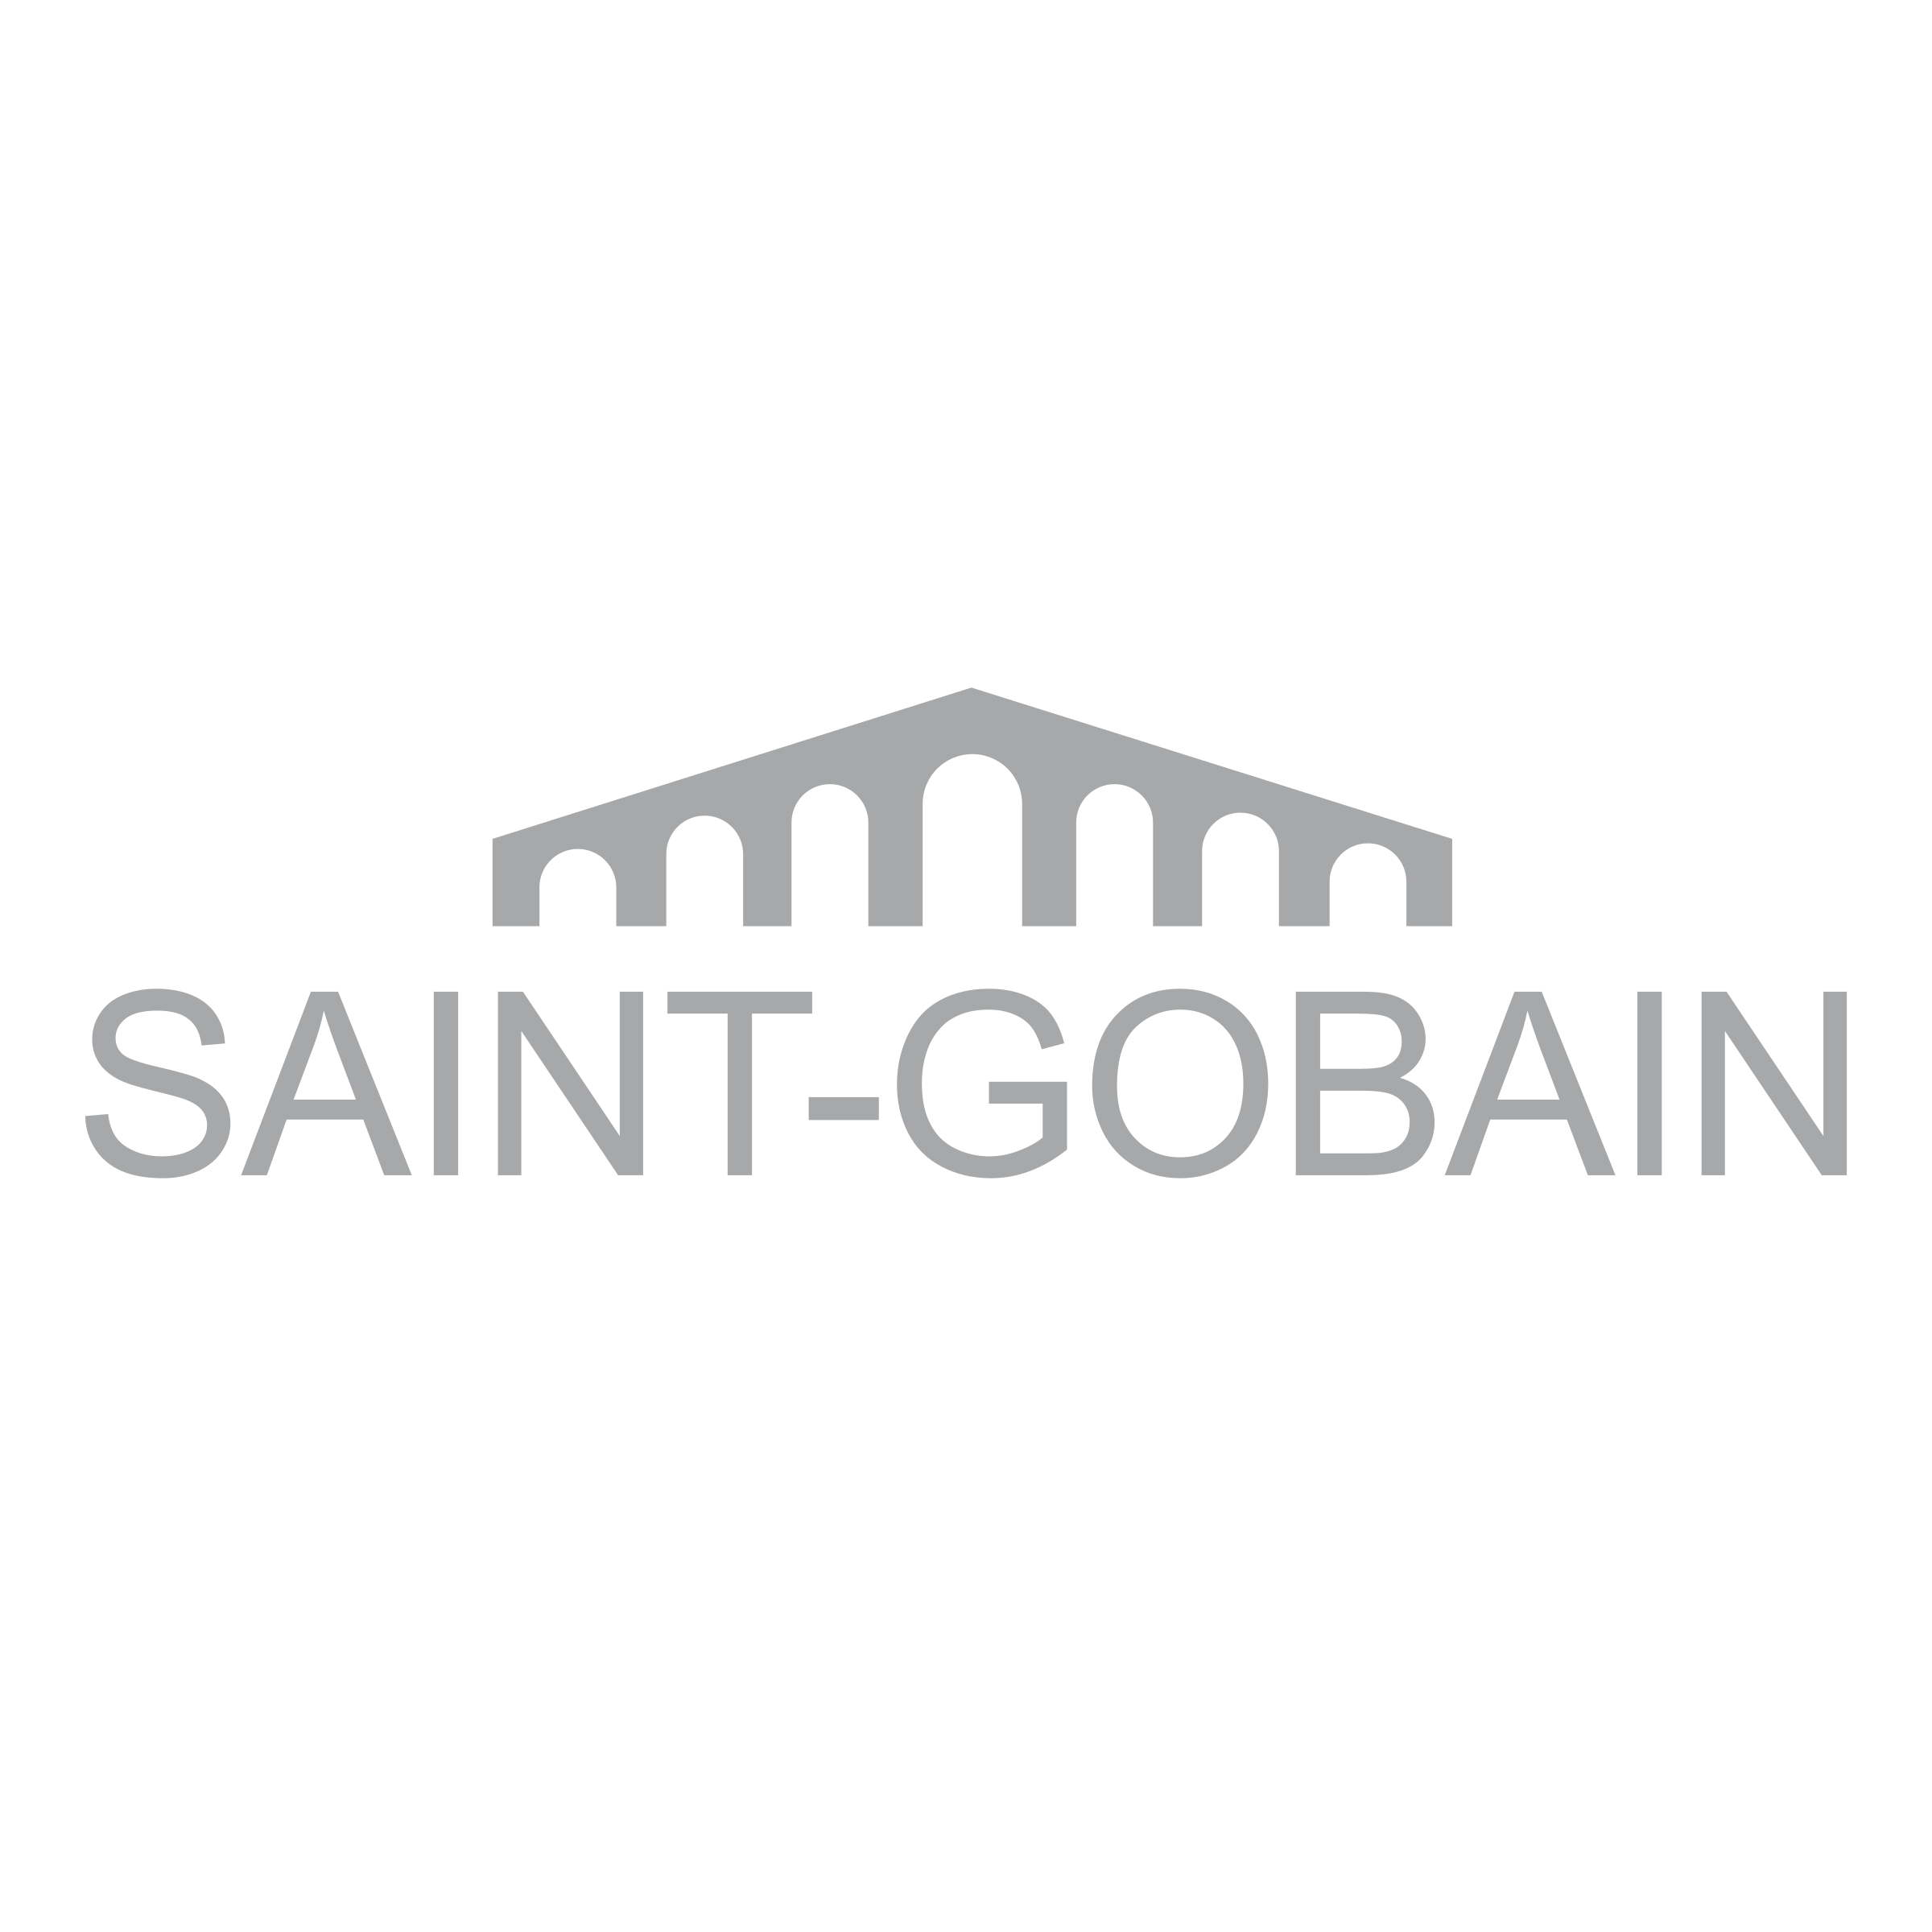 Saint-Gobain Logo - Saint Gobain Logo PNG Transparent & SVG Vector - Freebie Supply